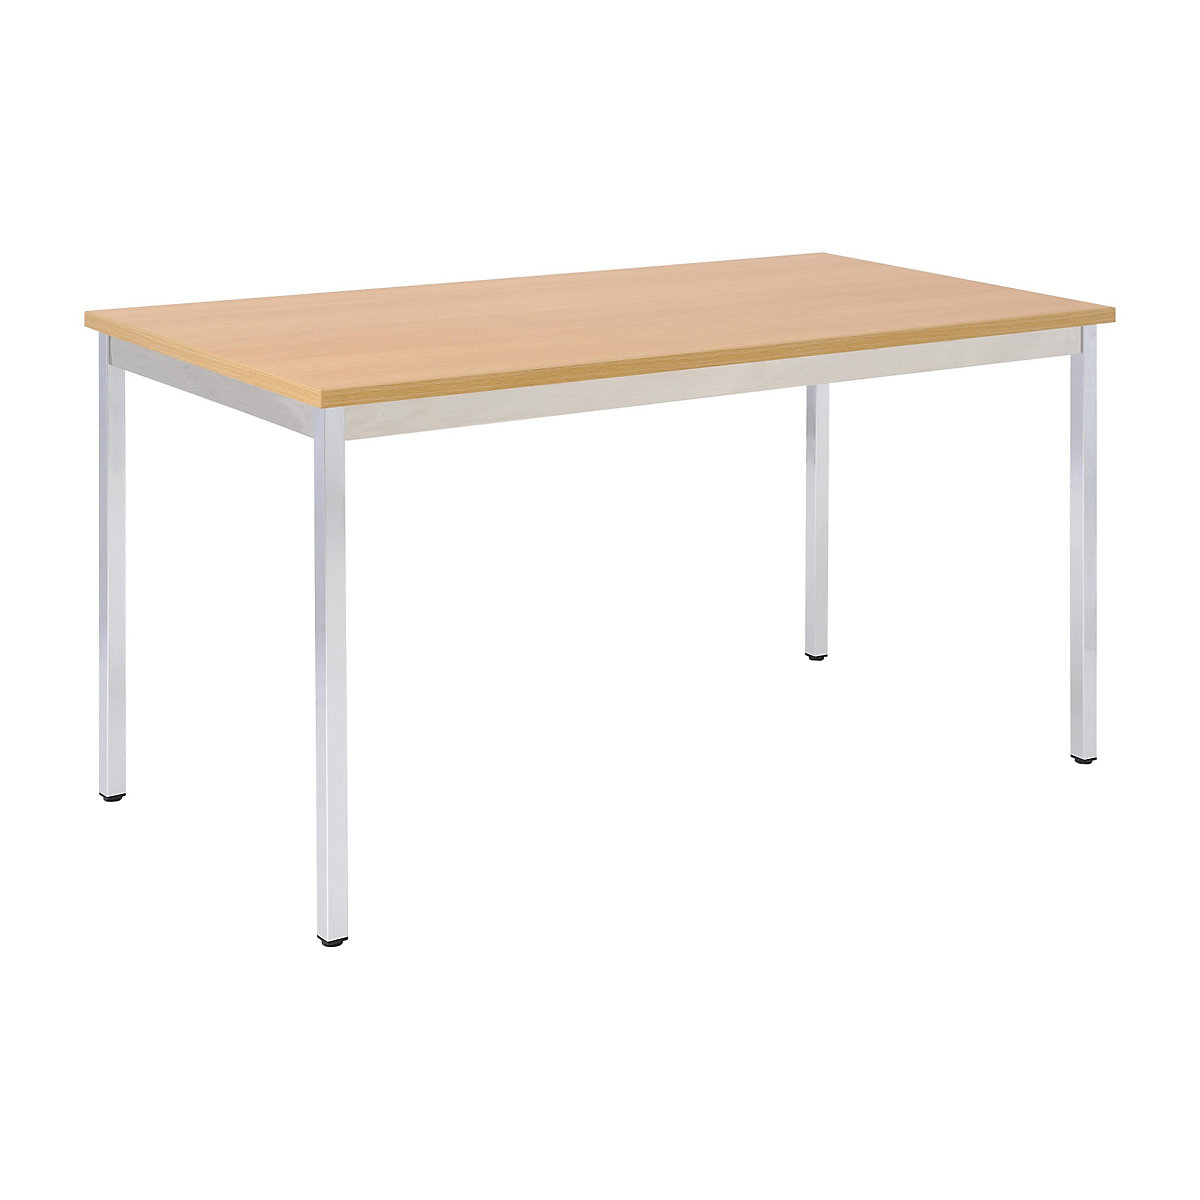 Víceúčelový stůl – eurokraft basic, obdélníkový tvar, v x š x h 740 x 1600 x 800 mm, deska v bukovém dekoru, podstavec pochromovaný-14